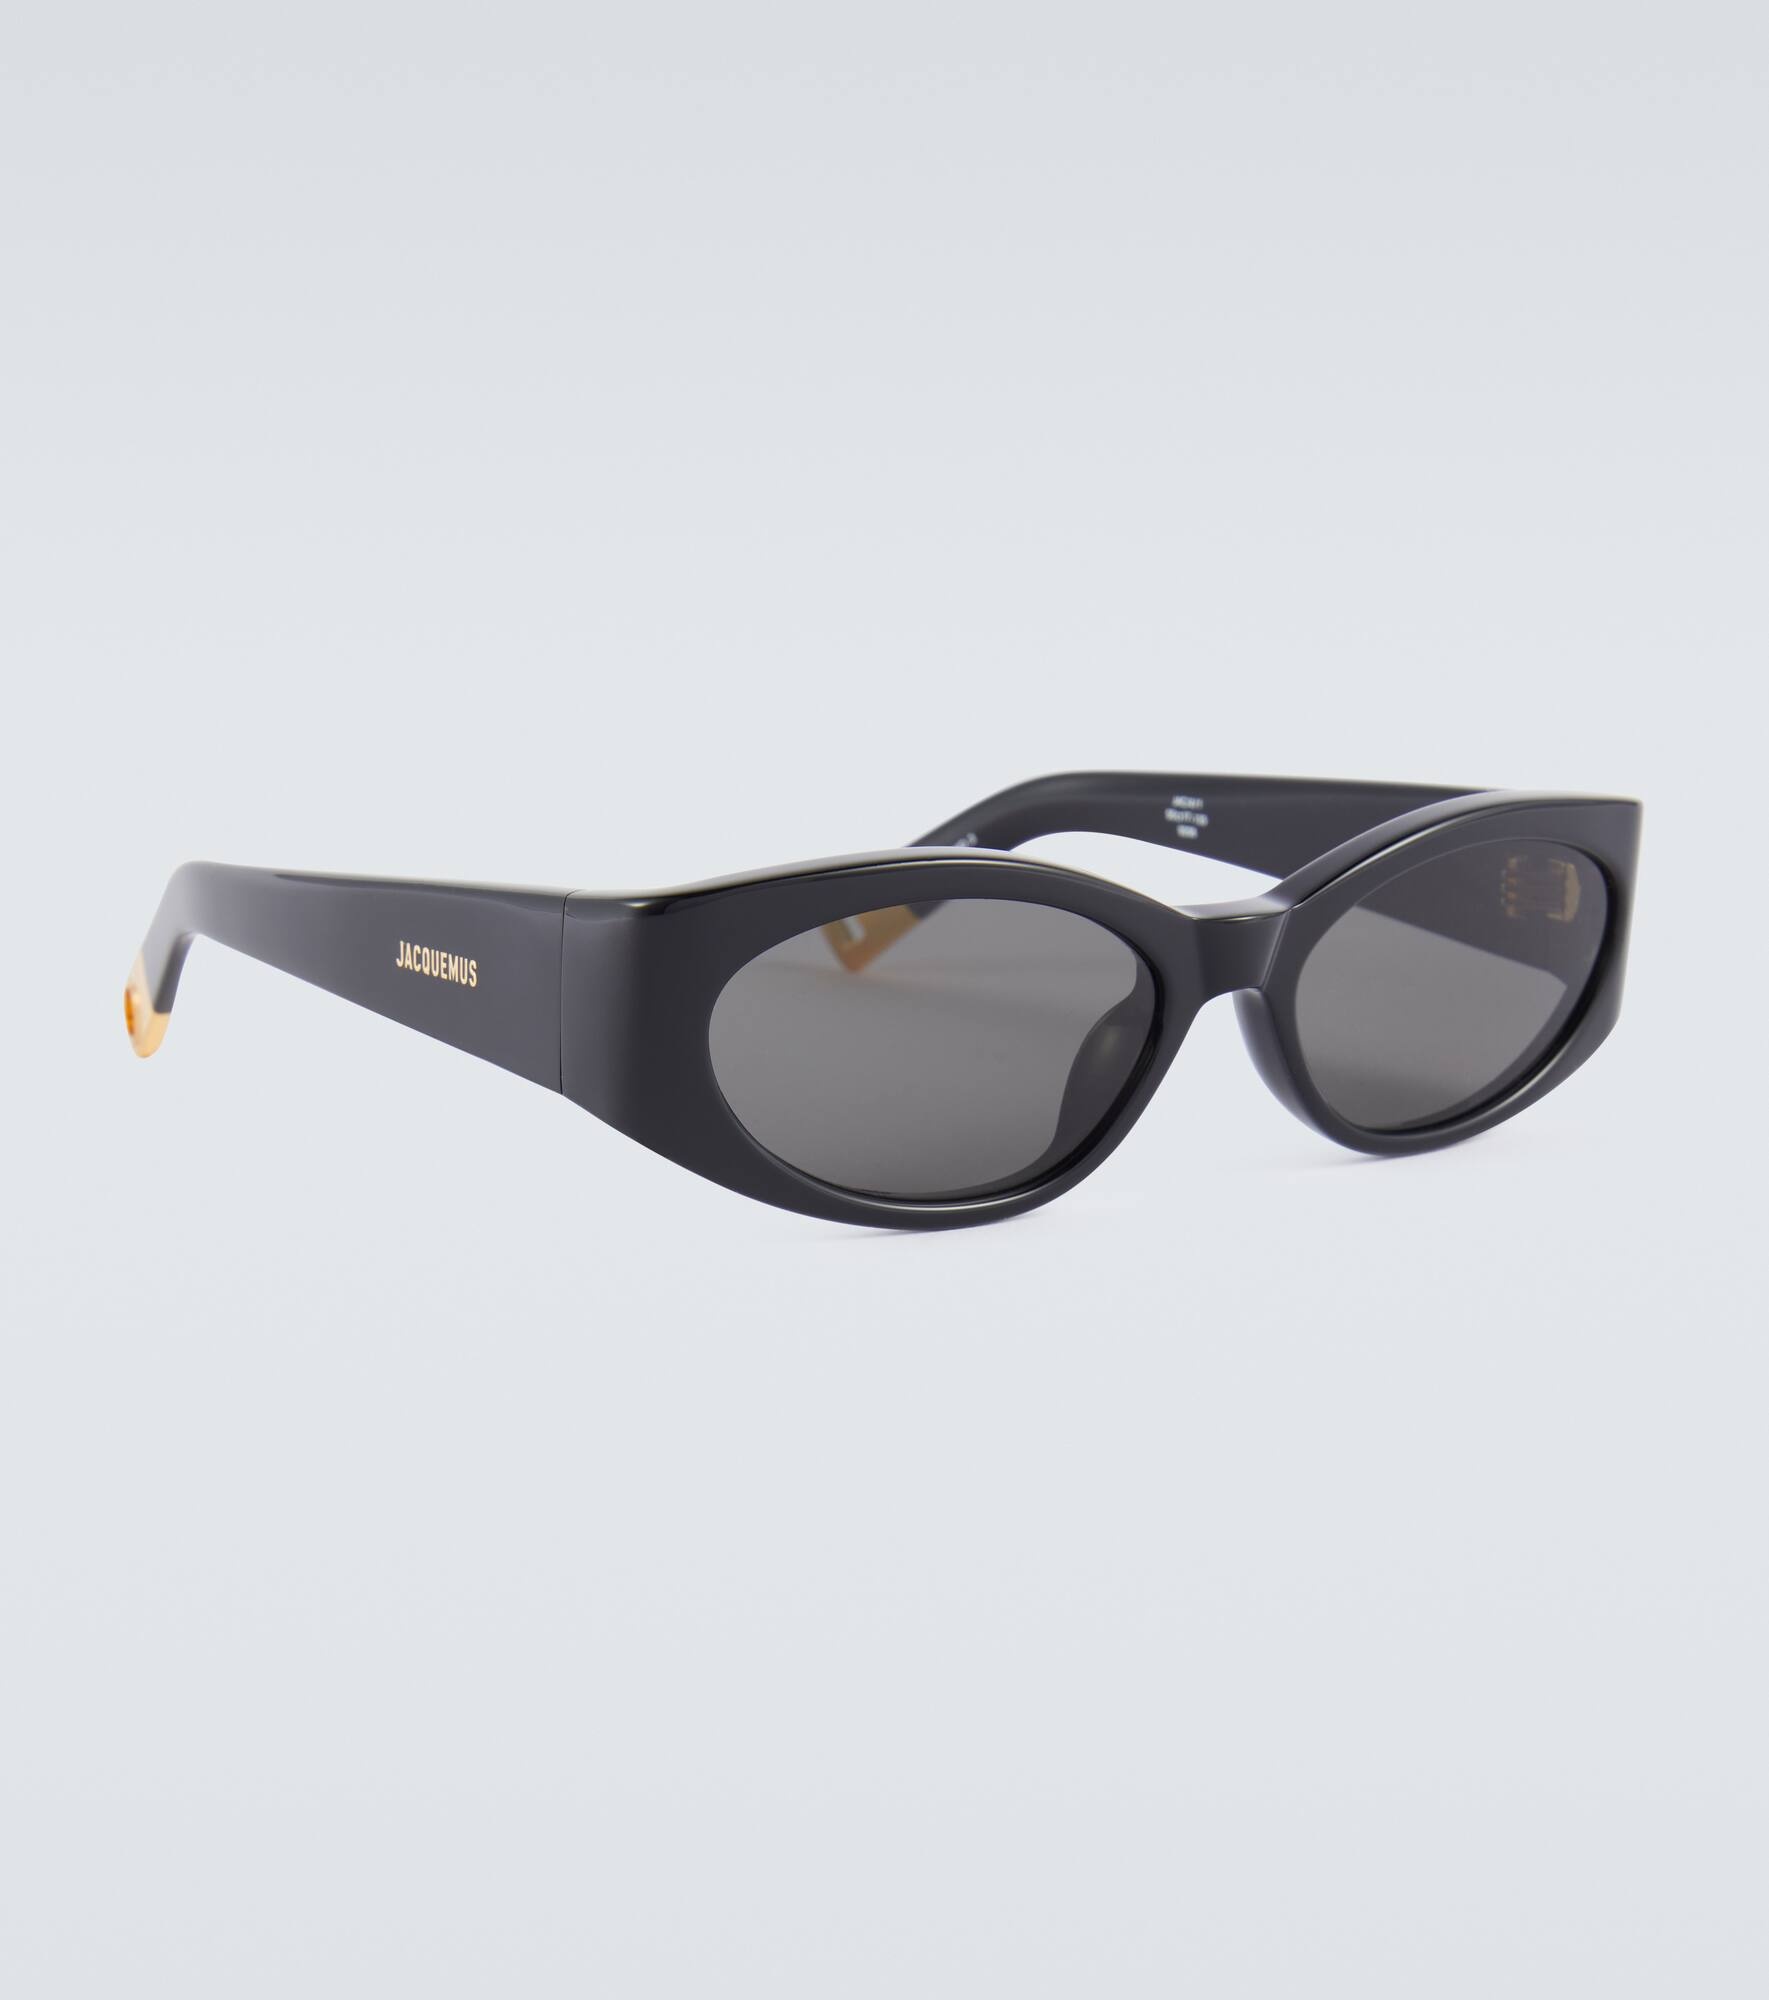 Les Lunettes Ovalo oval sunglasses - 2